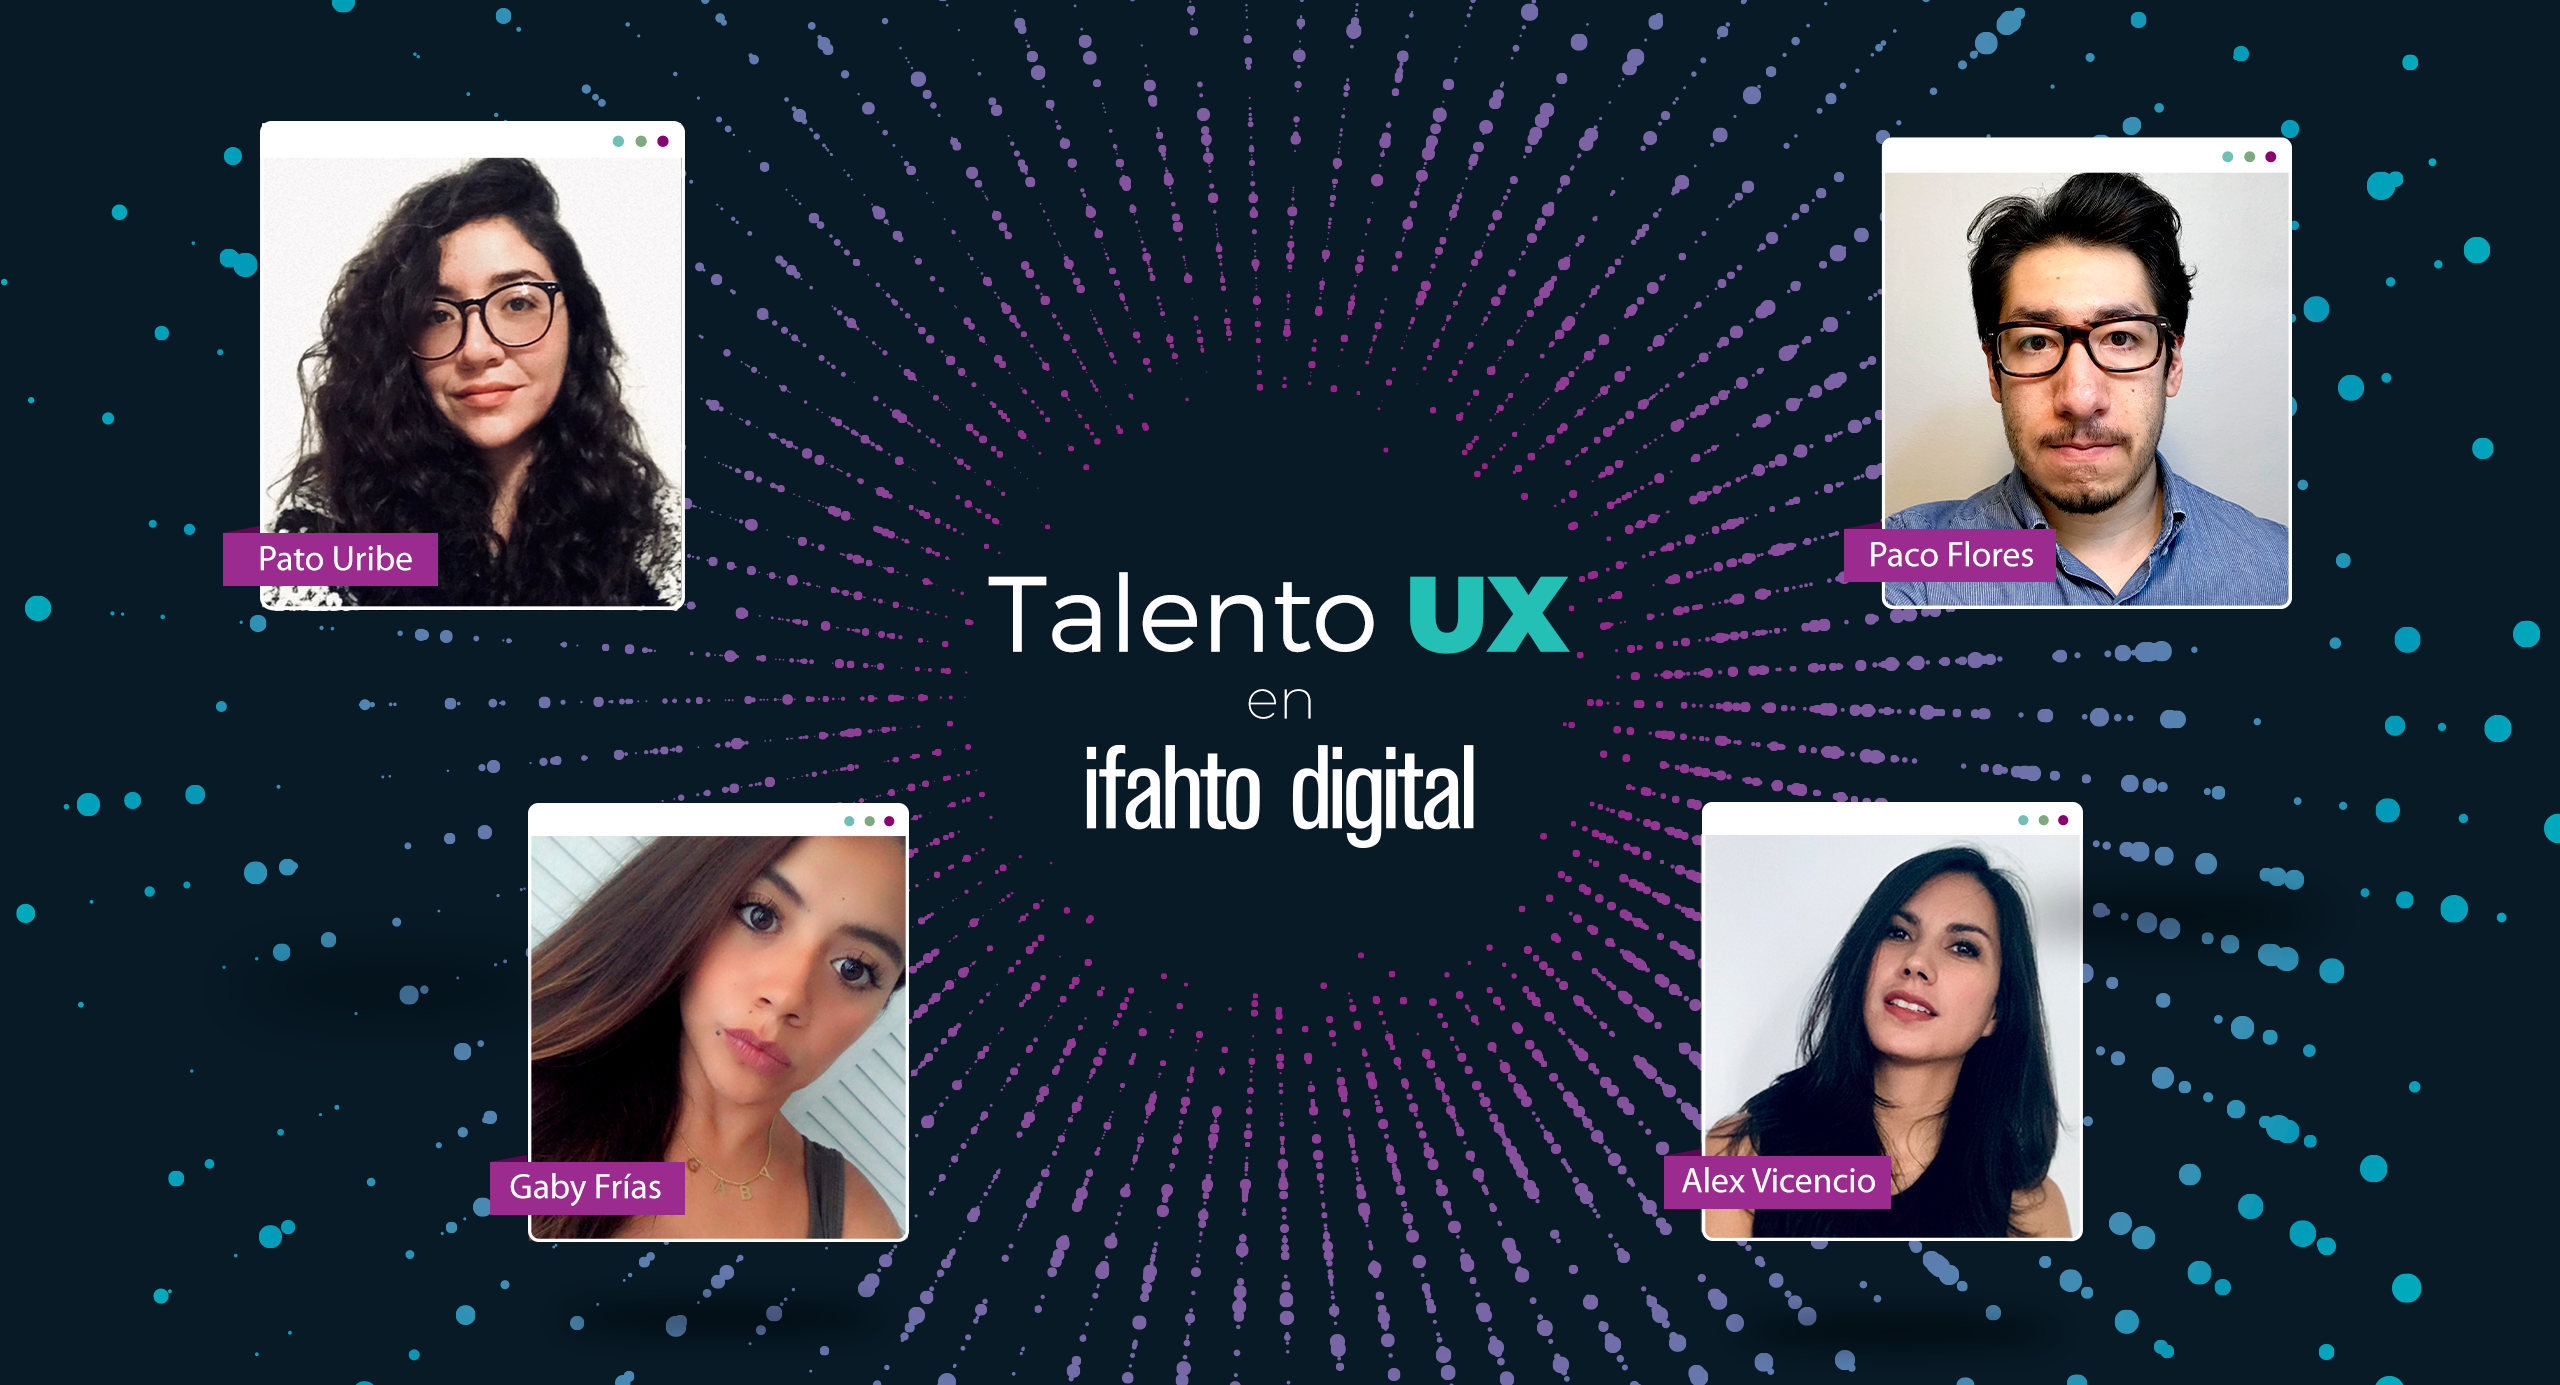 Ifahto digital, una de las mejores empresas de diseño UX en México